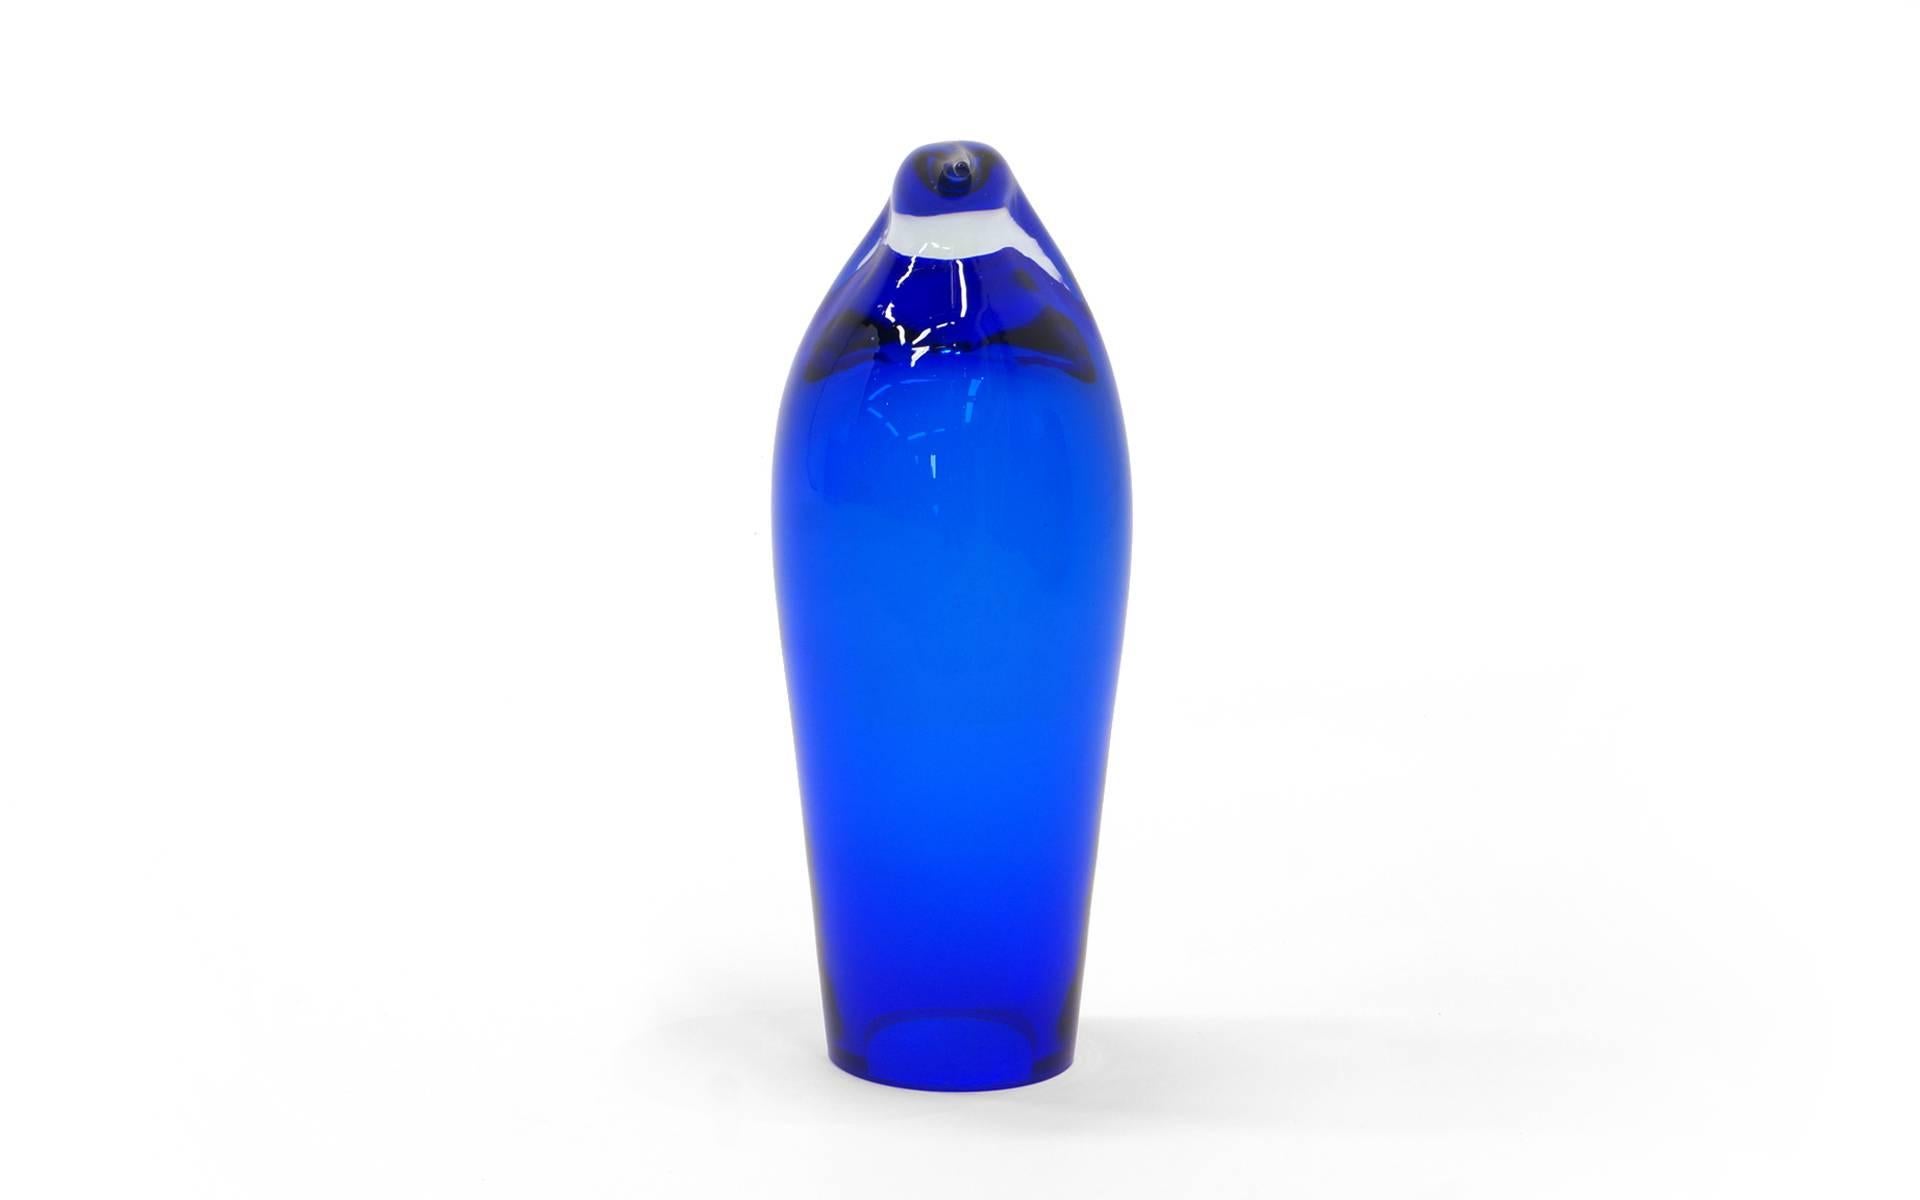 Magnifique sculpture moderne de pingouin en verre d'art bleu. Pas d'éclats ni de réparations. Fabriqué par Blenko. Expédition rapide.